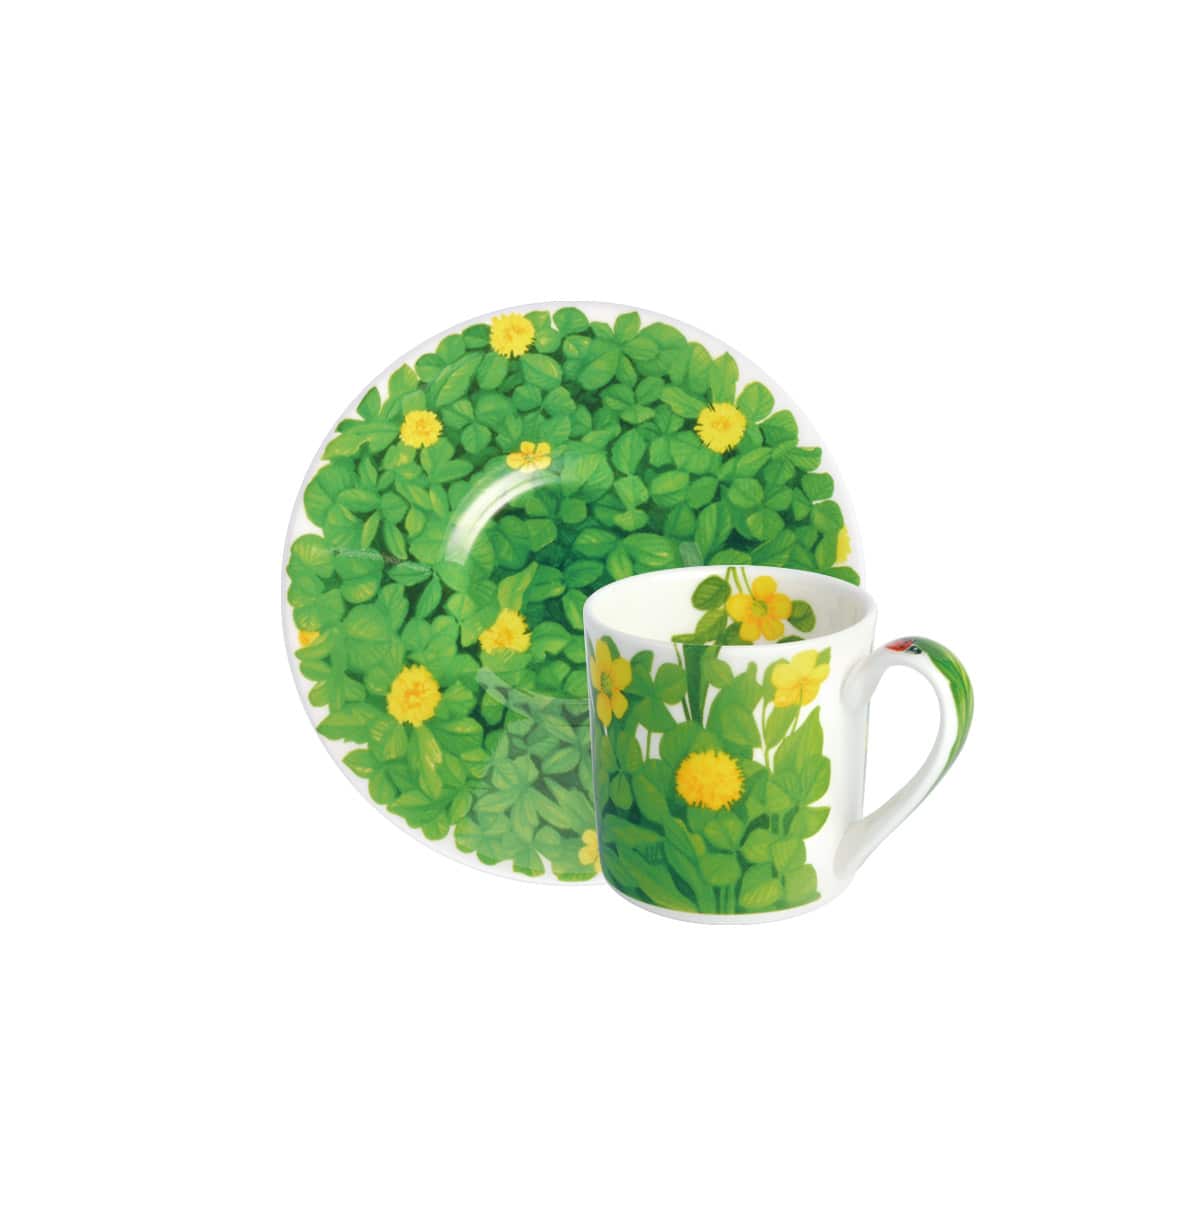 Taitu Prati Italiani Espresso Cups Lawn and Flowers Mix 4 Pieces Yellow Flower